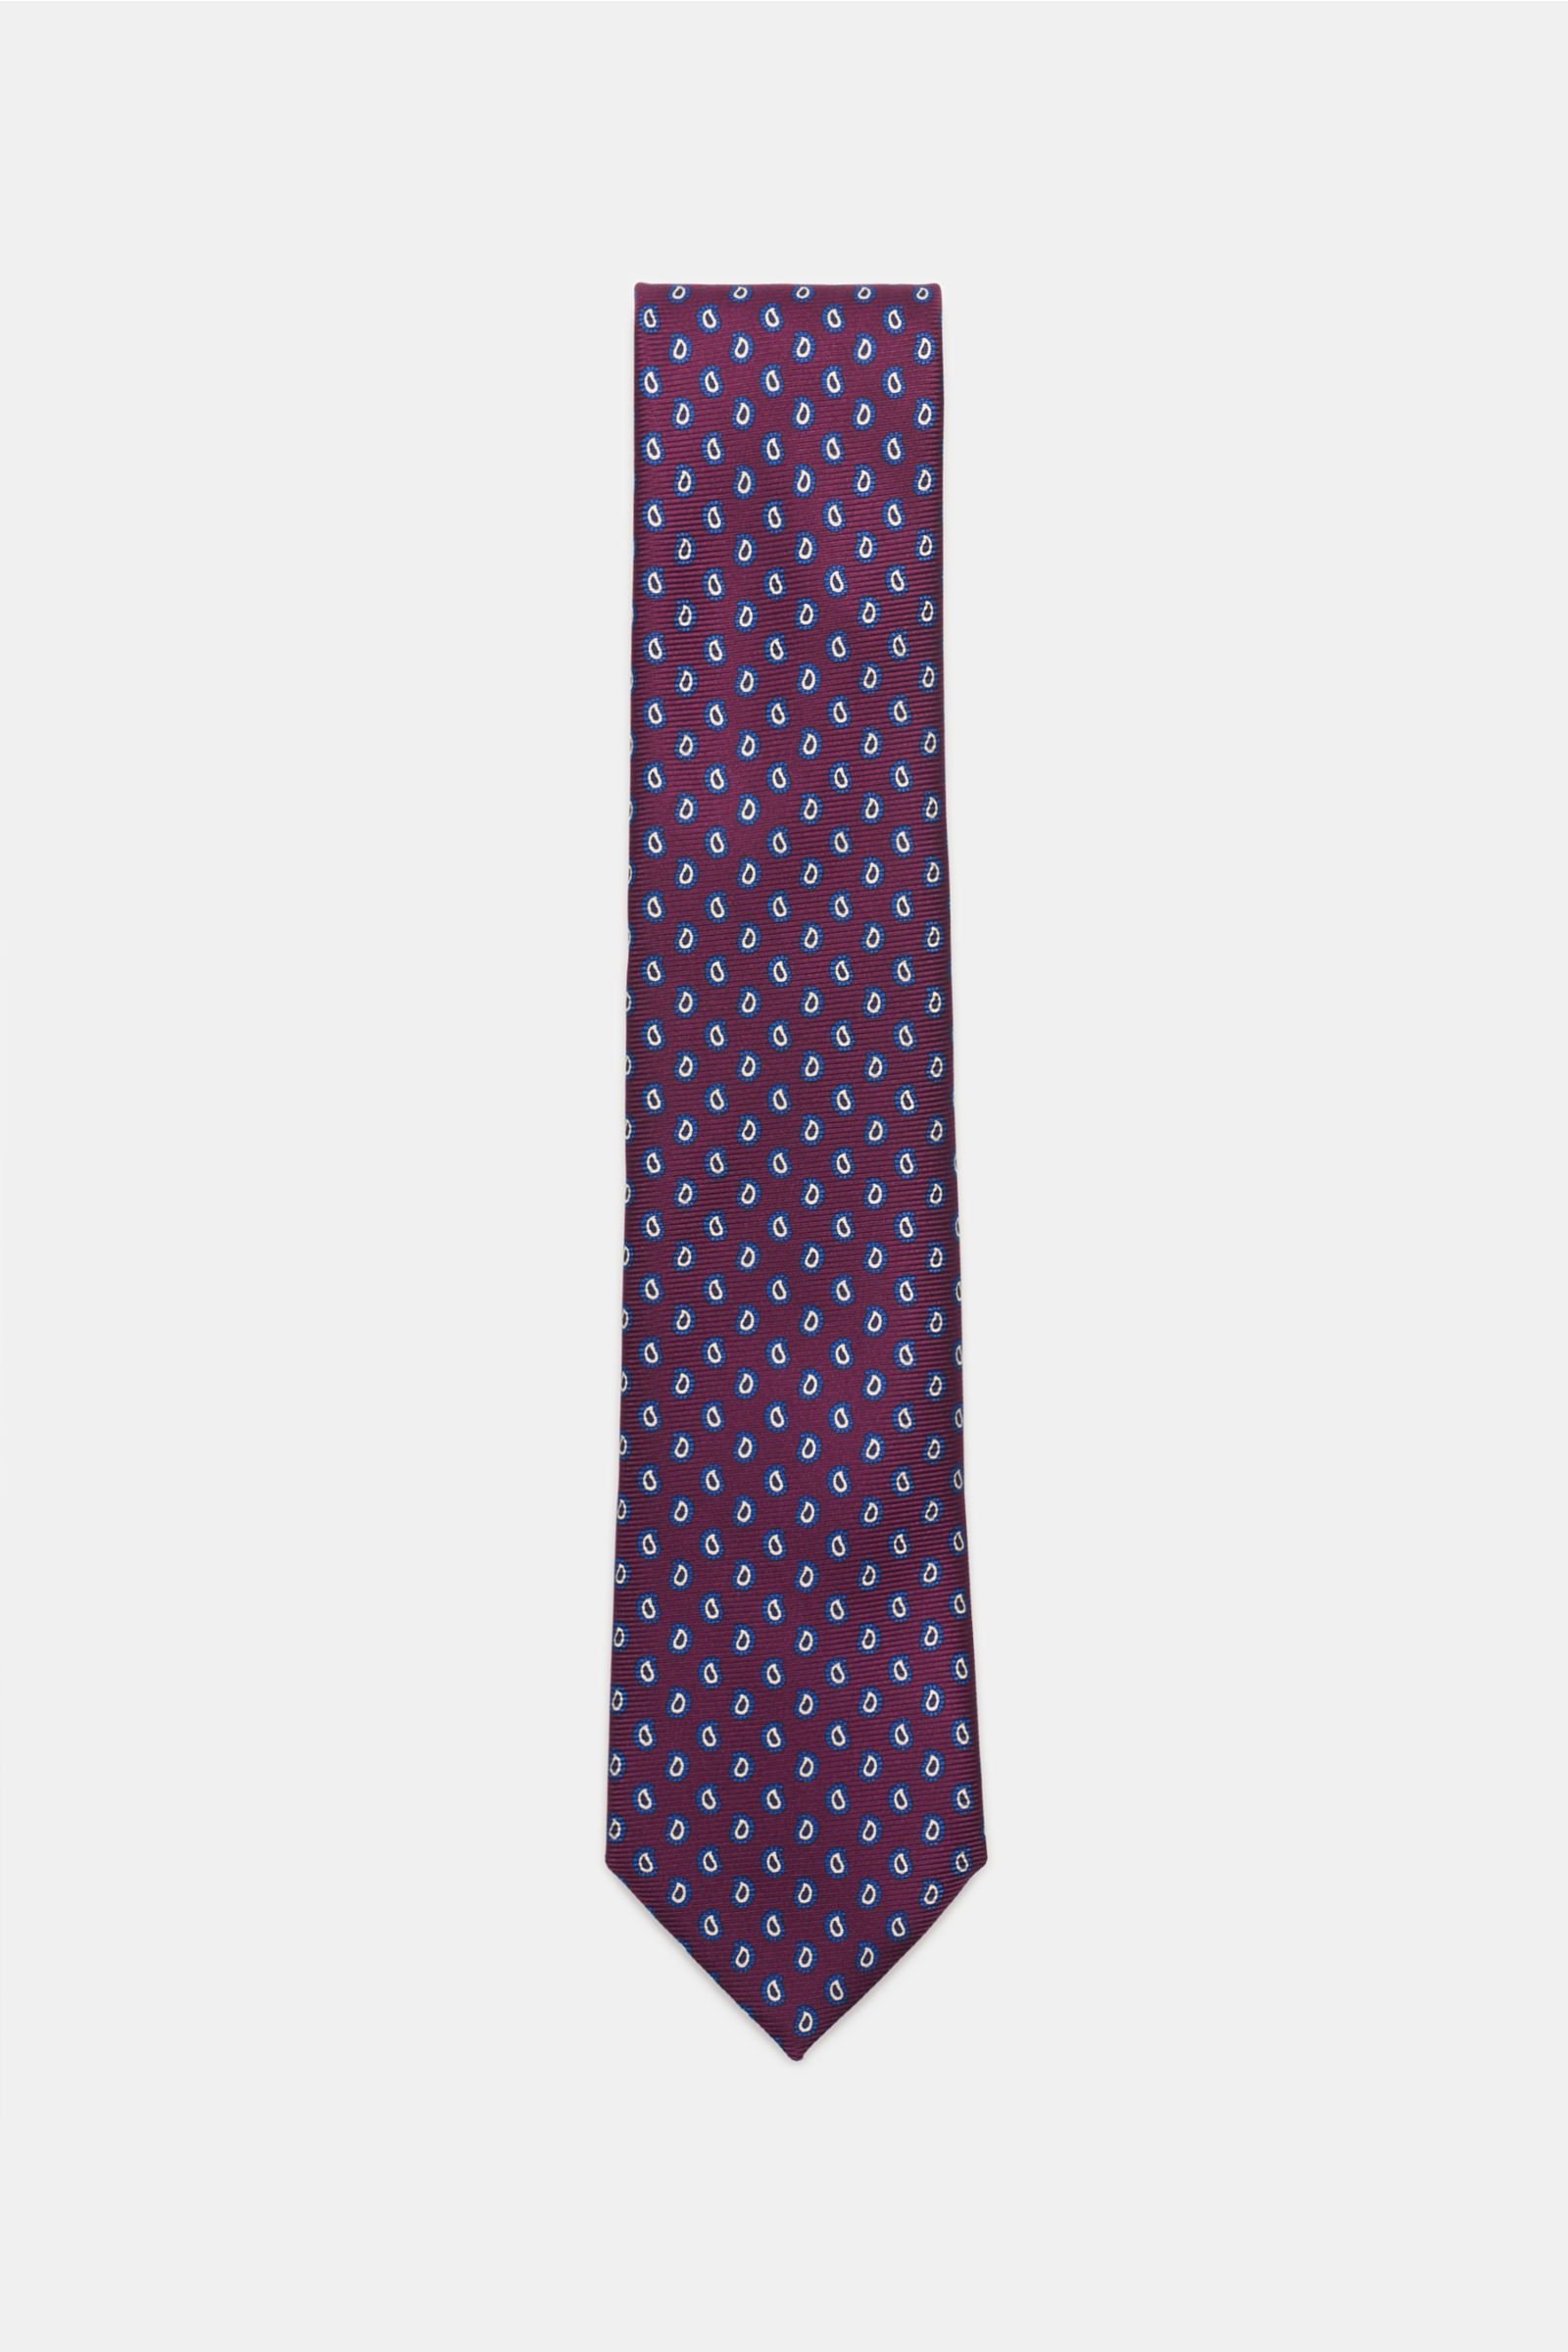 Silk tie purple patterned